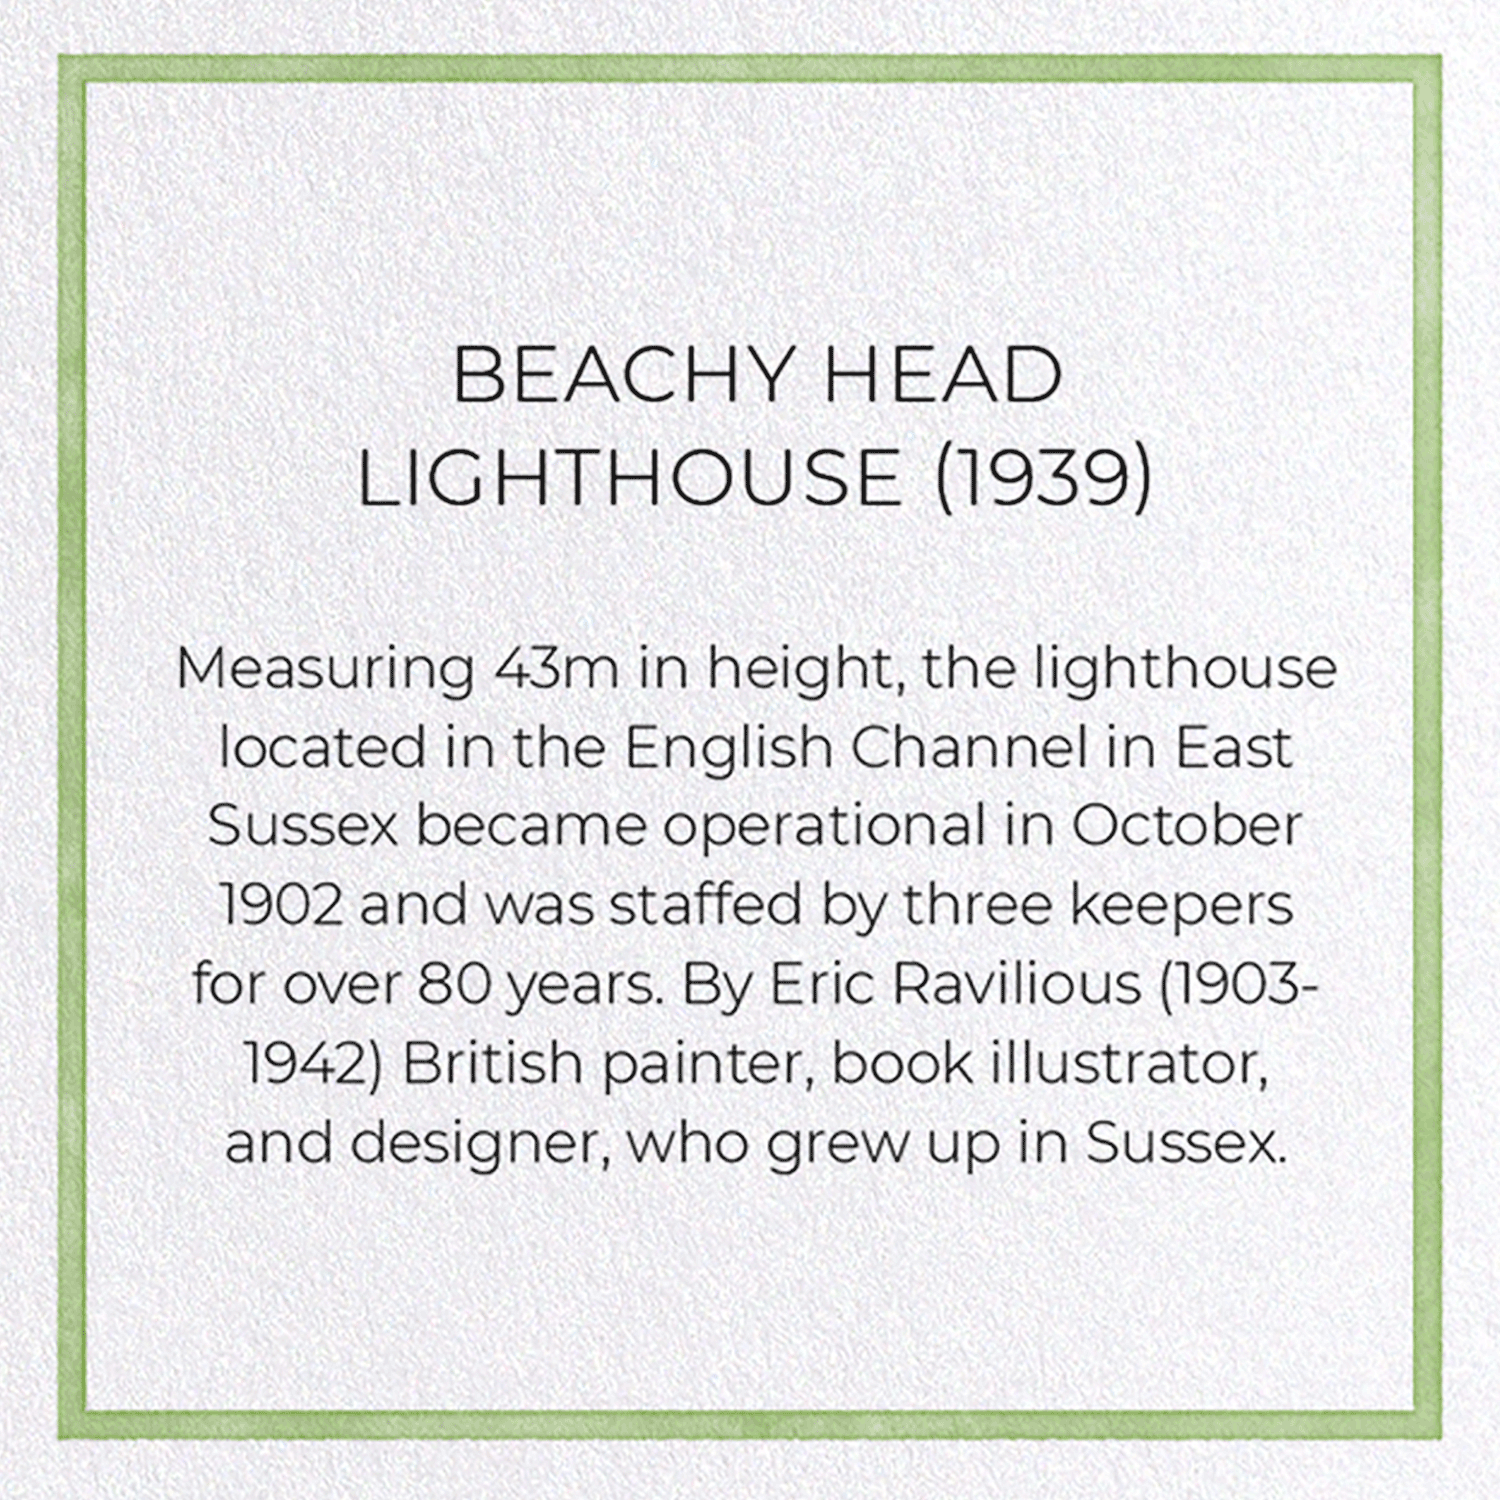 BEACHY HEAD LIGHTHOUSE (1939)